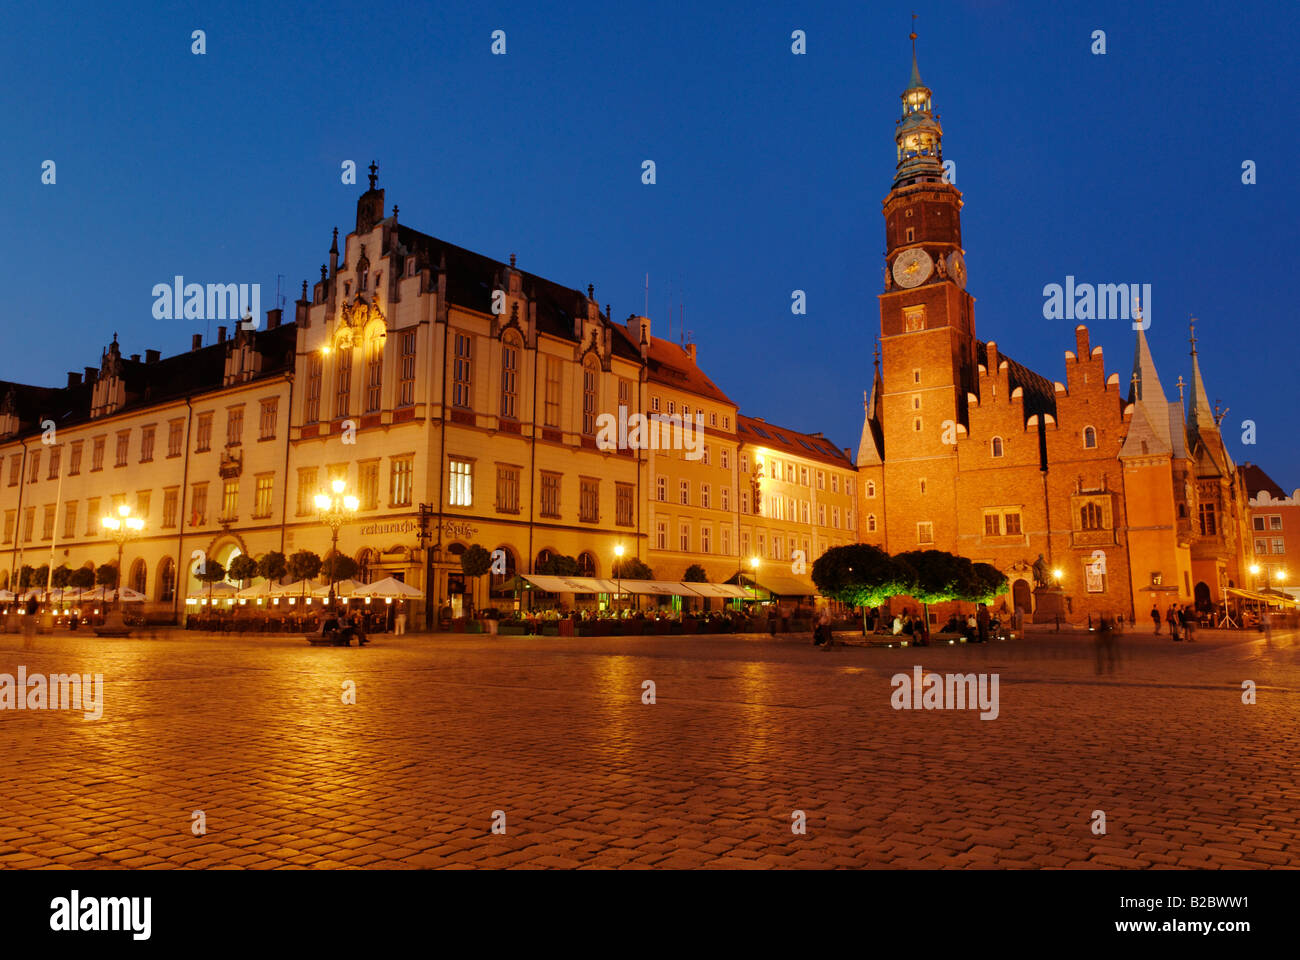 Historisches Rathaus, Tuchhallen, Gewandhaus oder Tuchmacher Hall, Marktplatz, Rynek Wroclaw/Breslau, Schlesien, Polen, Europa Stockfoto